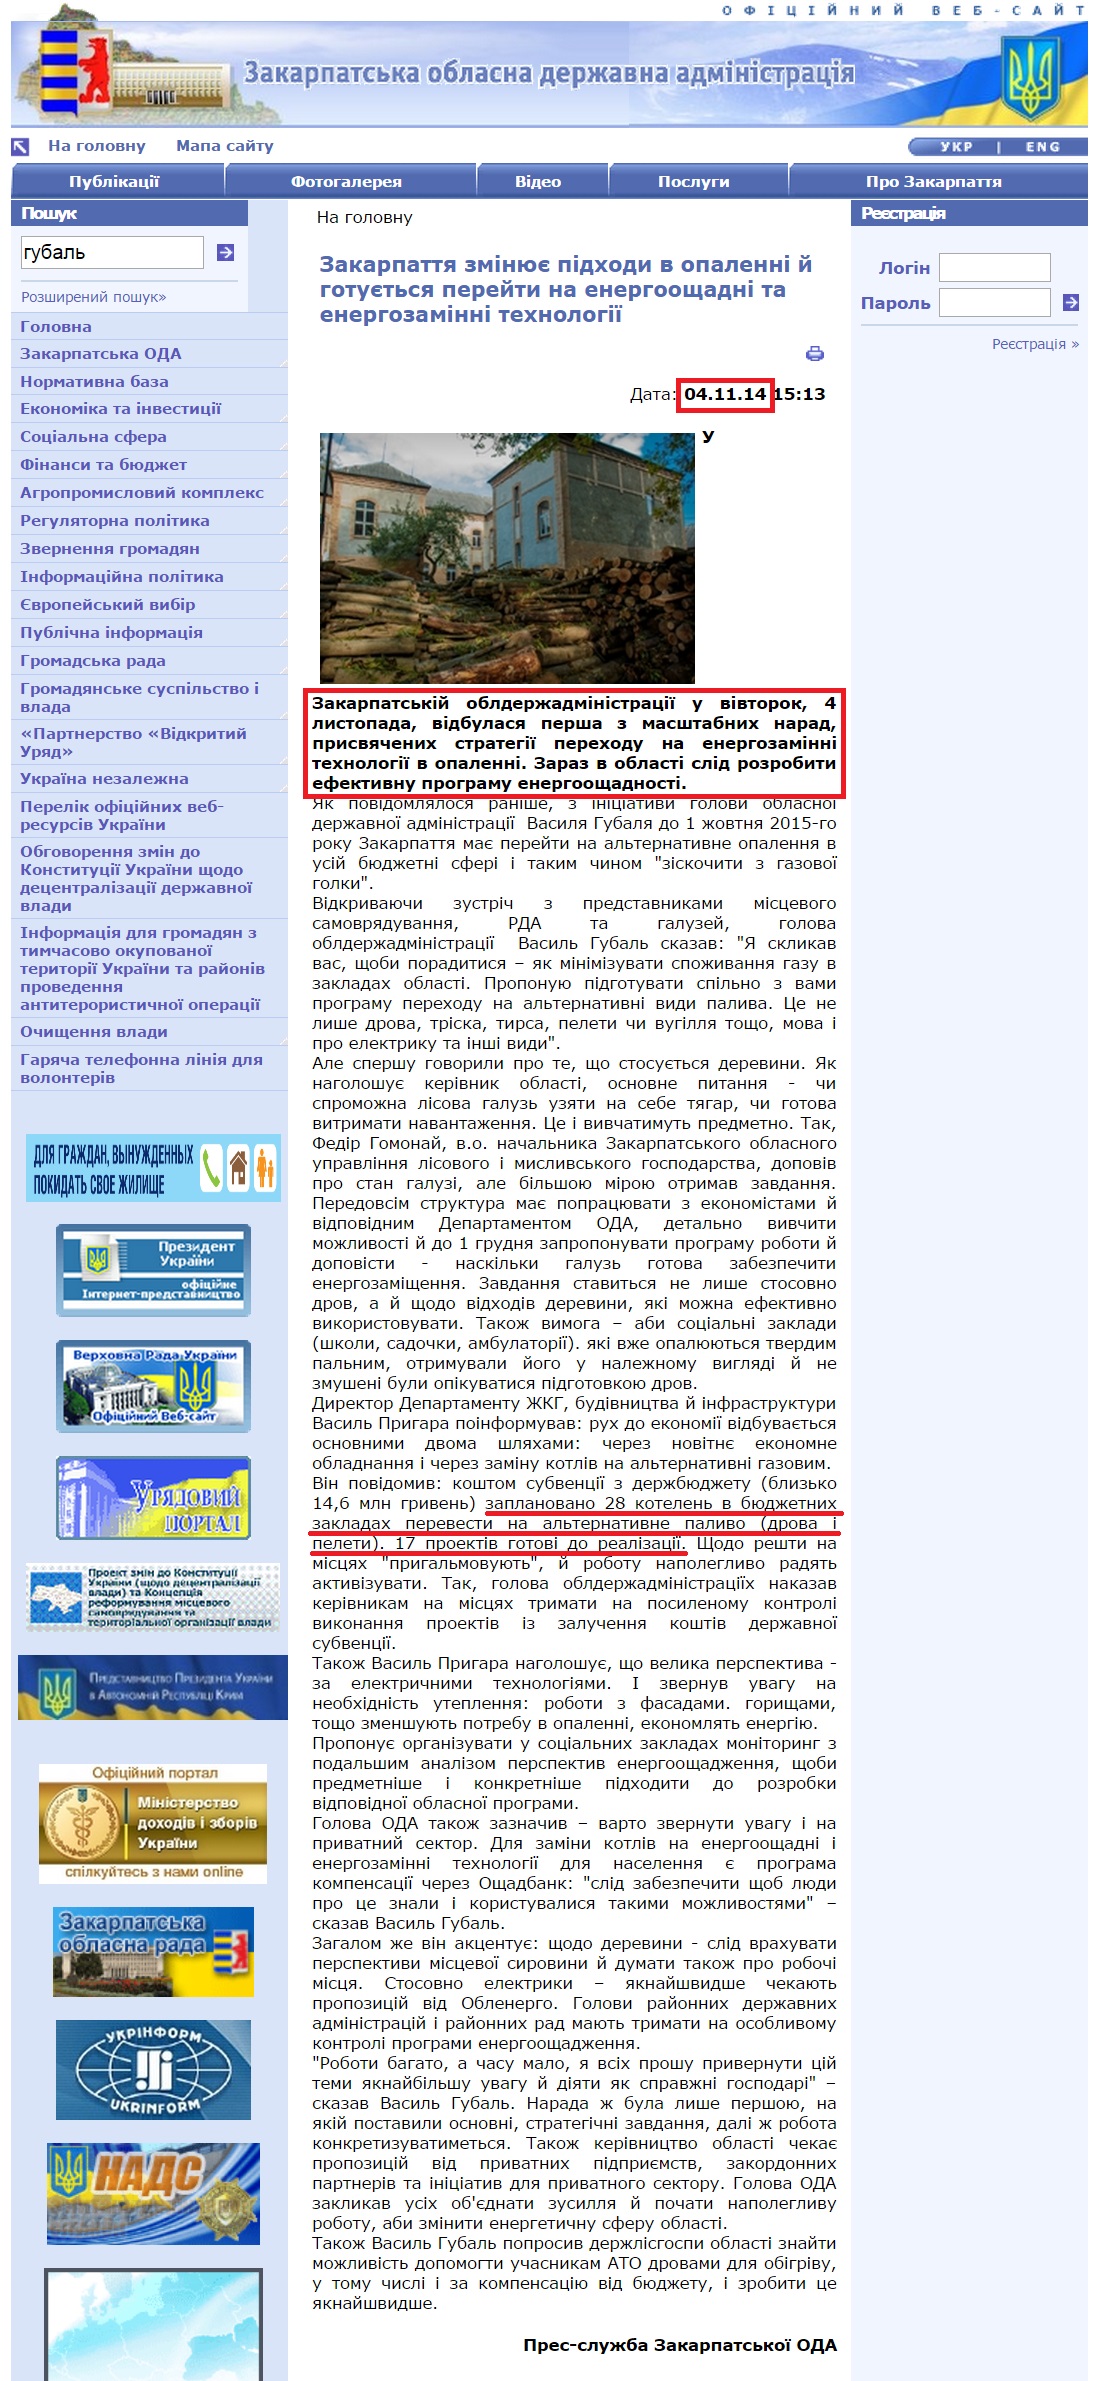 http://www.carpathia.gov.ua/ua/publication/content/10293.htm?lightWords=%D0%B3%D1%83%D0%B1%D0%B0%D0%BB%D1%8C